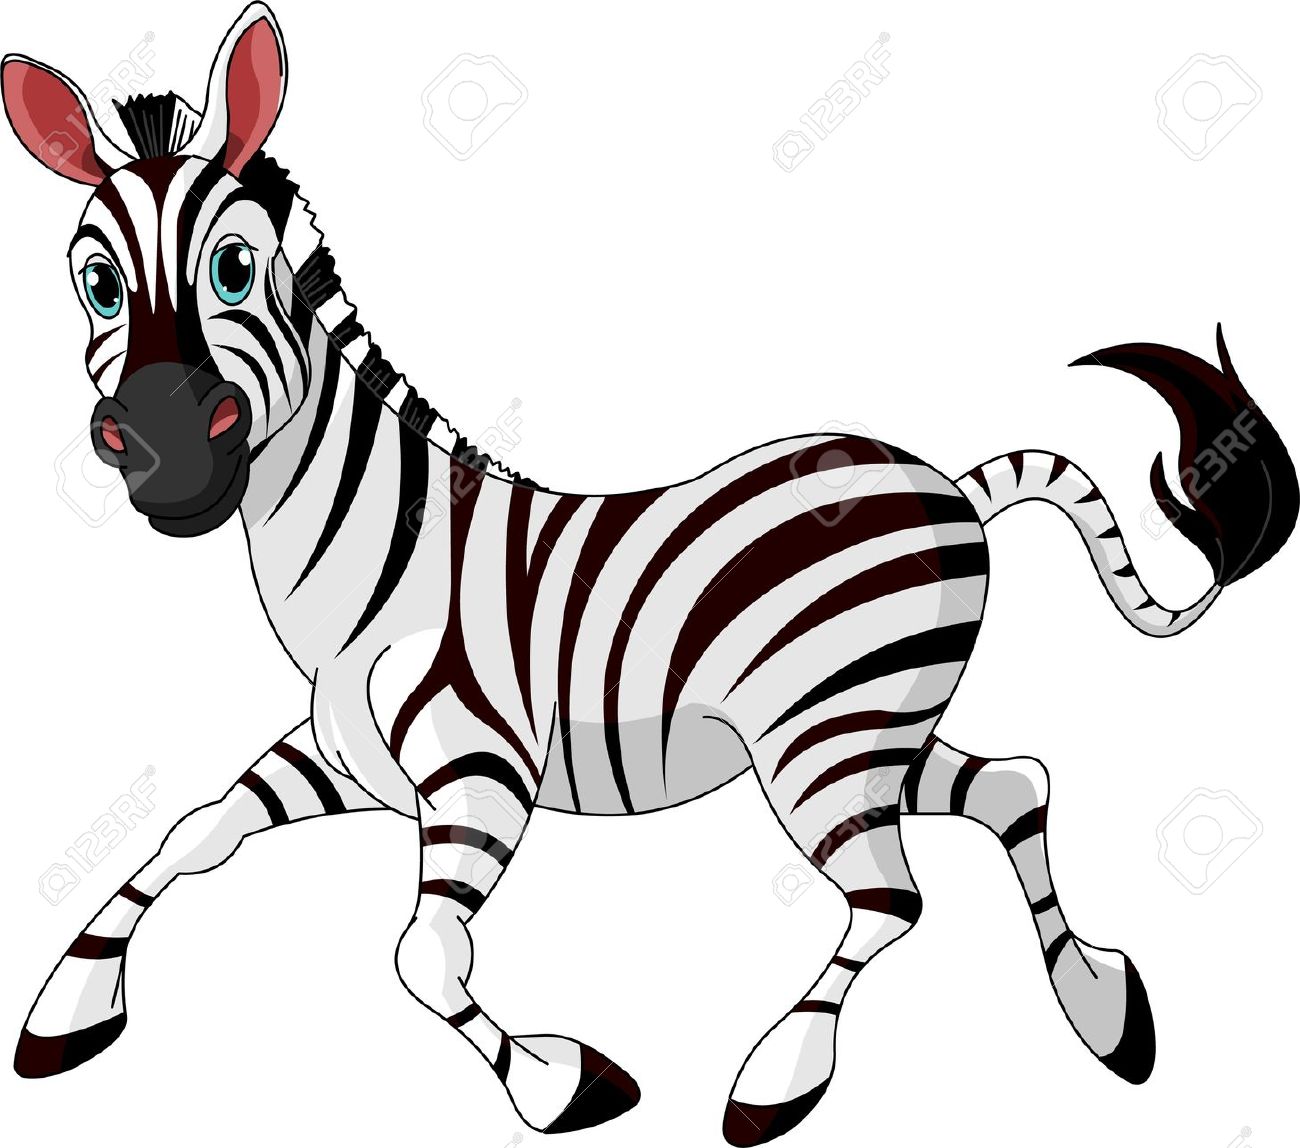 Zebra Clipart.